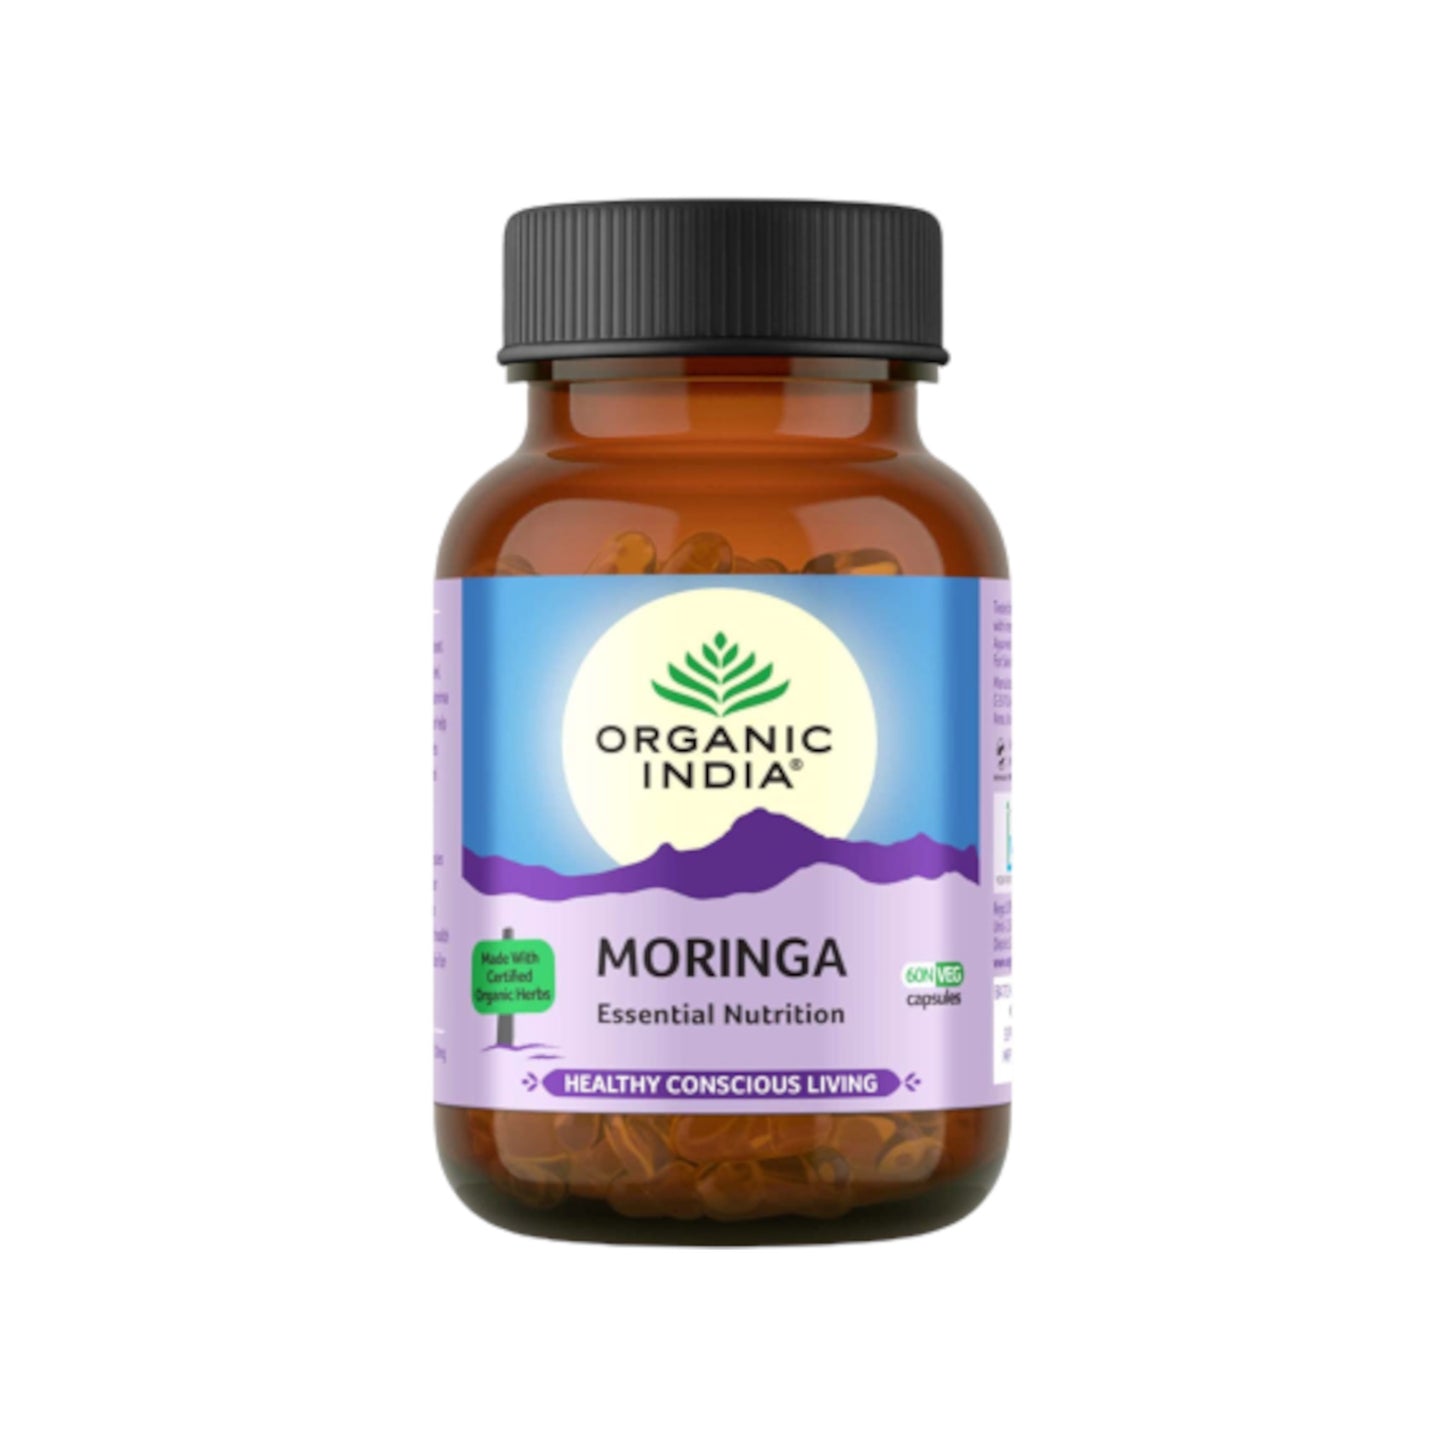 Organic India - Moringa 60 Capsules